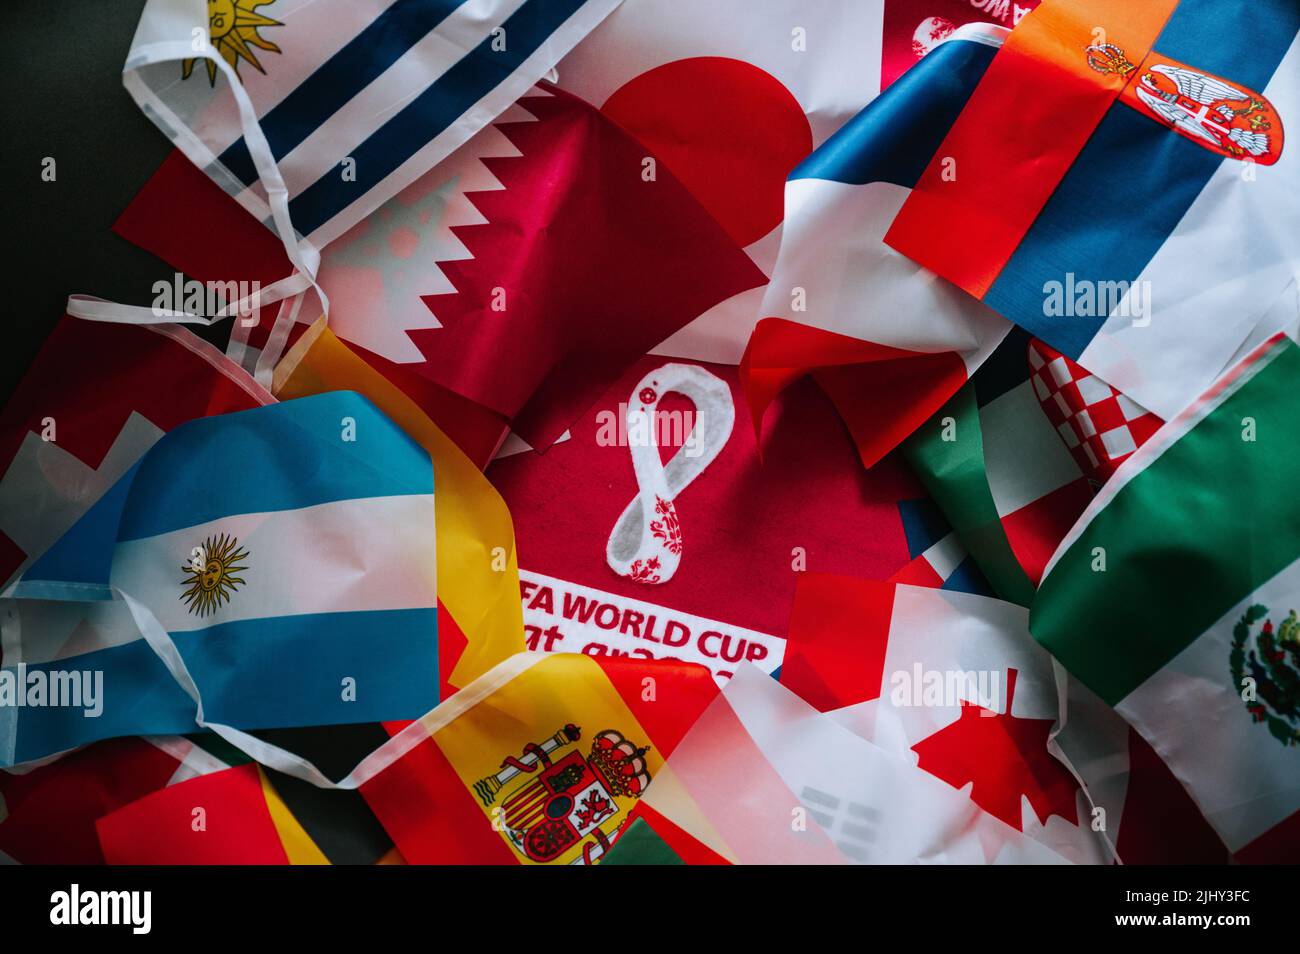 QATAR, DOHA, 18 LUGLIO 2022: Bandiere di tutti i partecipanti alla Coppa del mondo FIFA in Qatar 2022. Logo della Coppa del mondo nel mezzo. Sfondo torneo di calcio Foto Stock